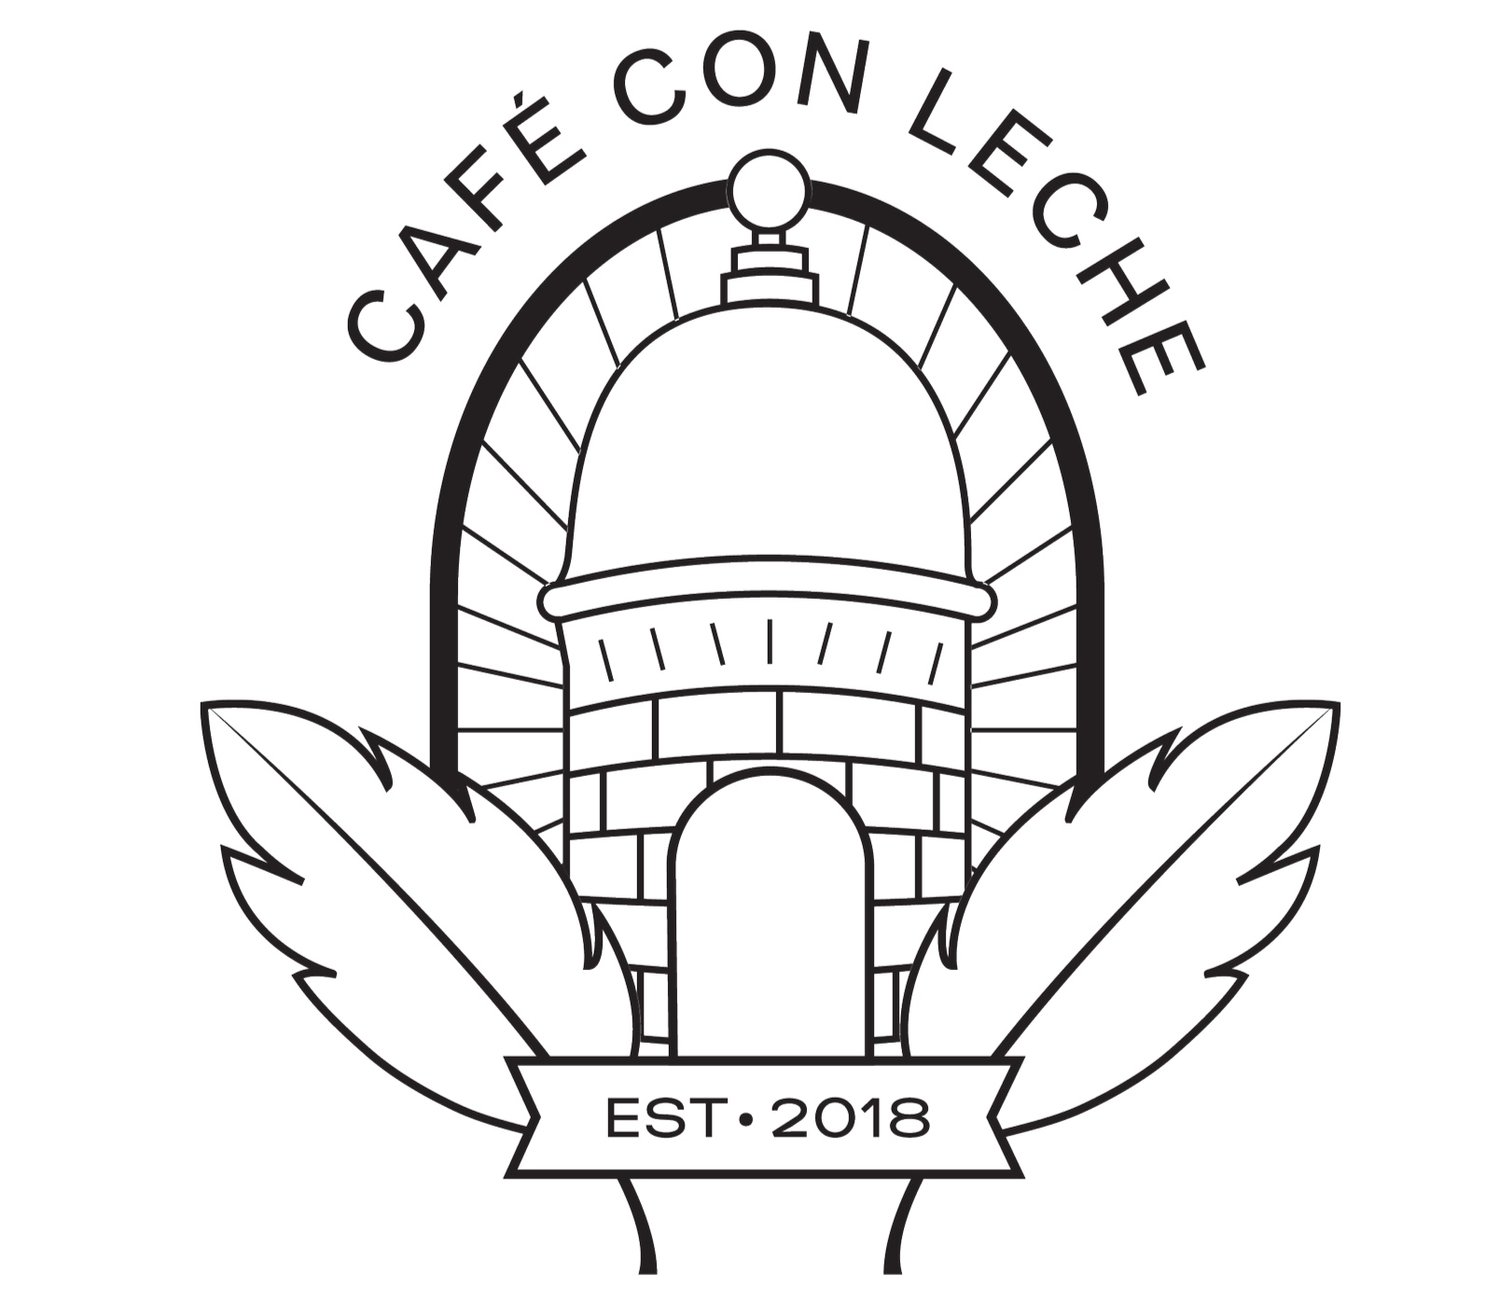 Cafe_con_leche_BK_logo-02+2